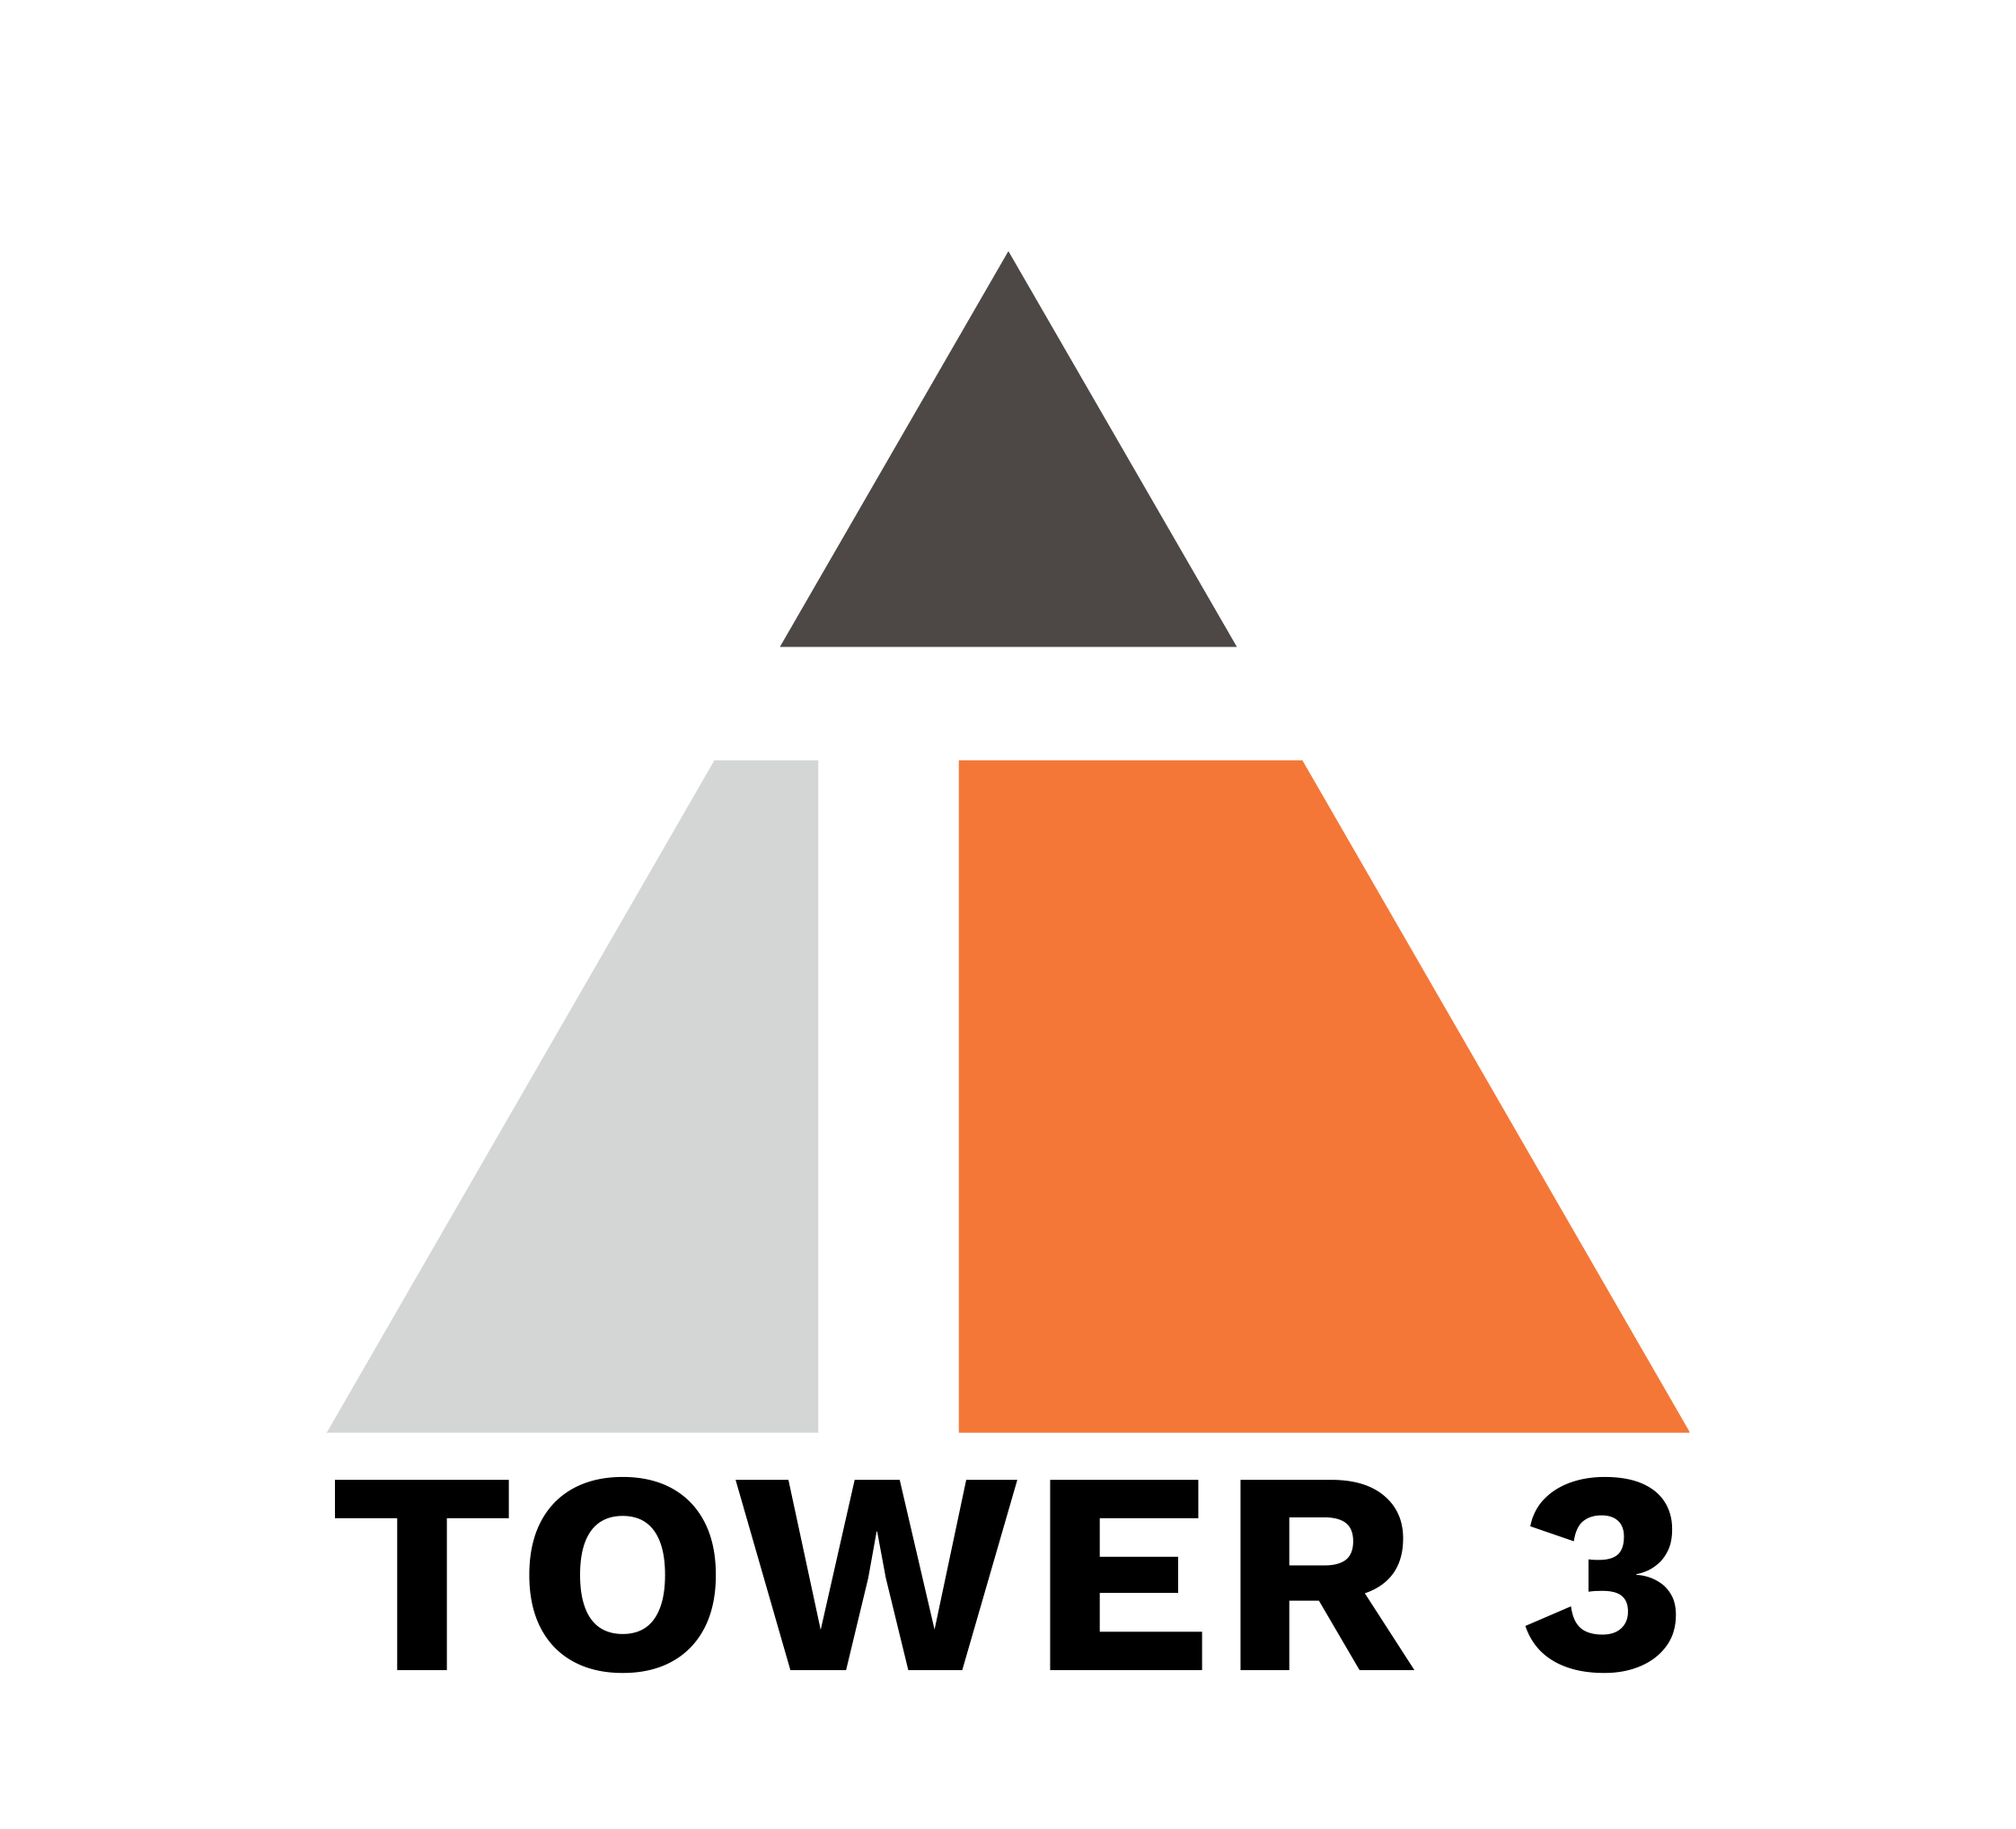 Tower 3 General Contractors